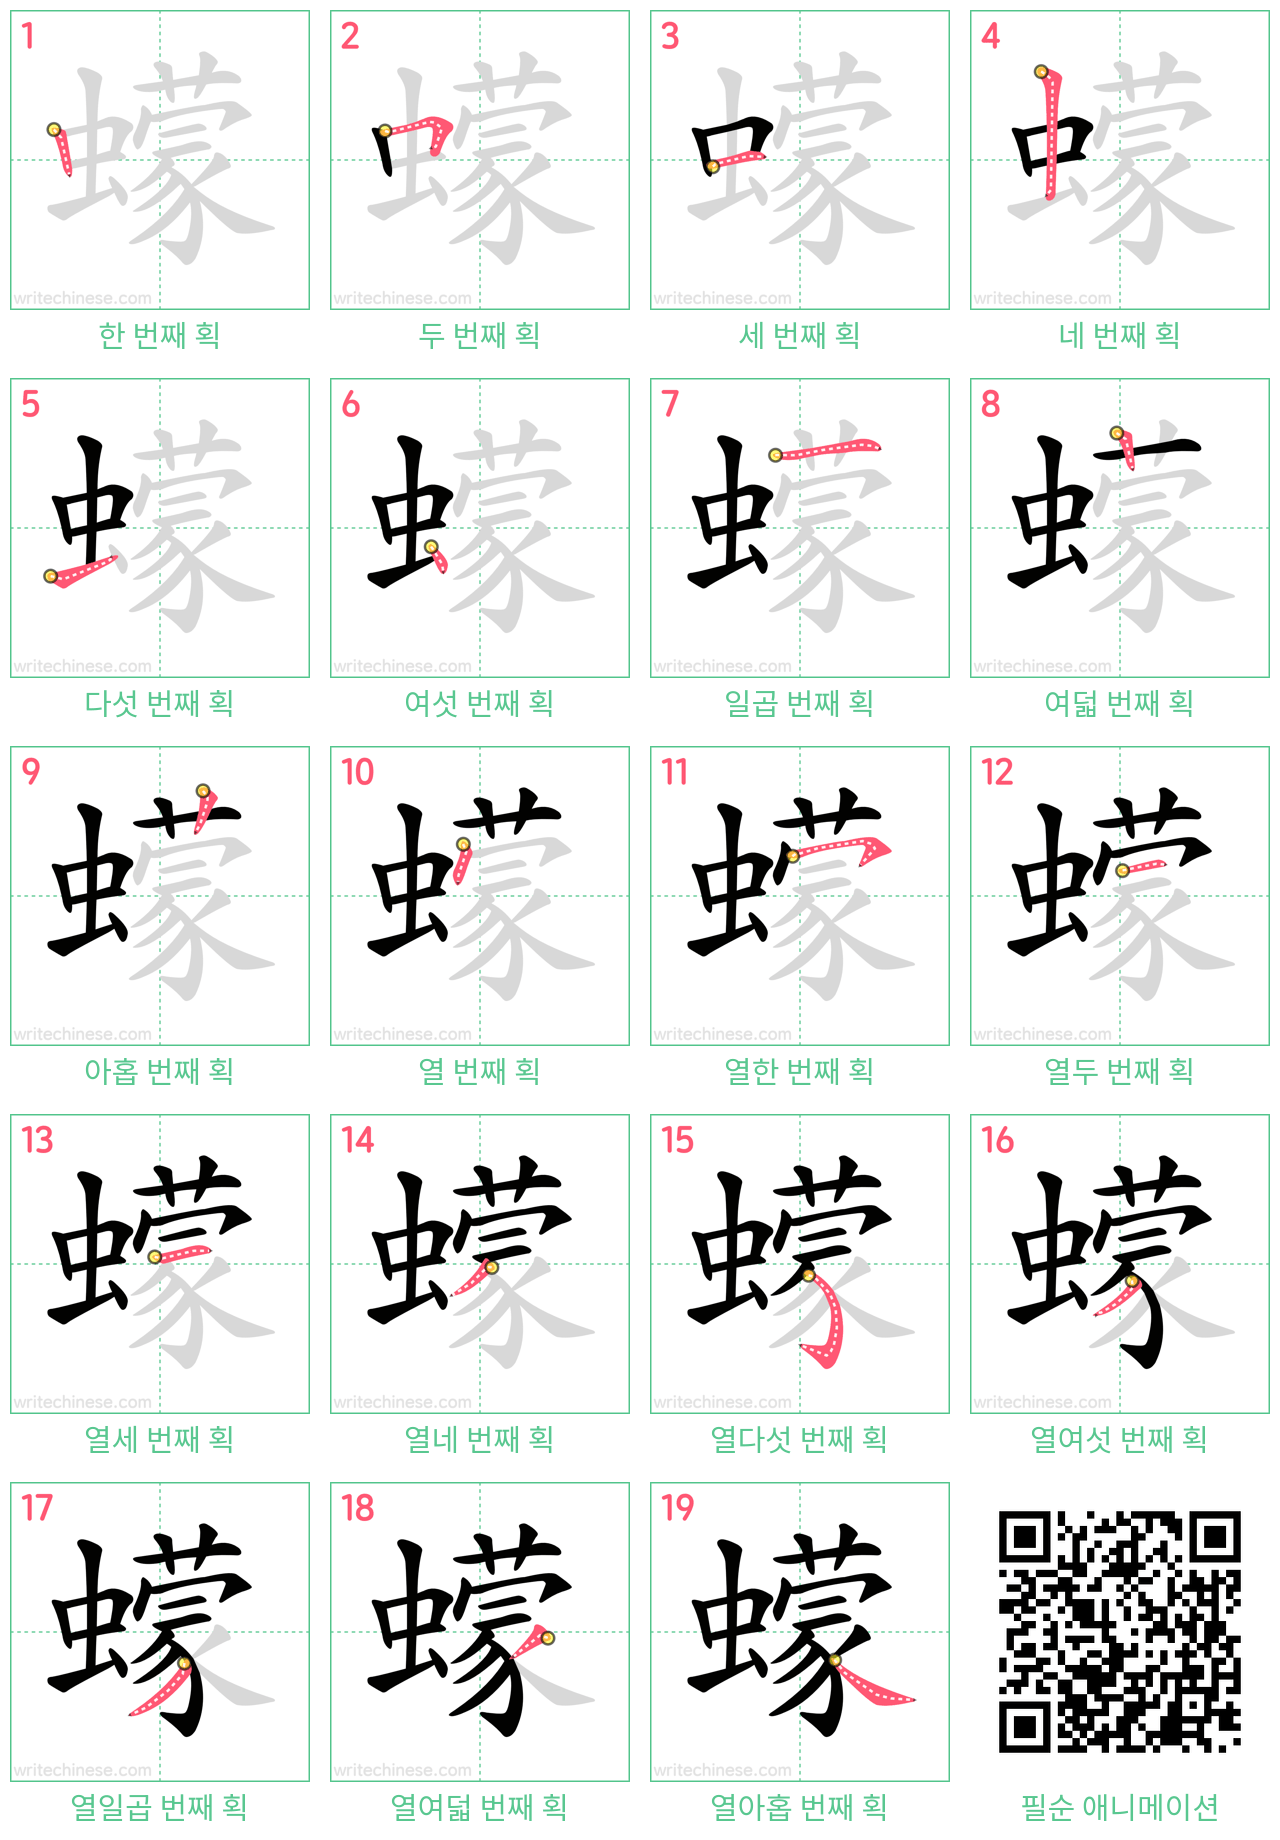 蠓 step-by-step stroke order diagrams